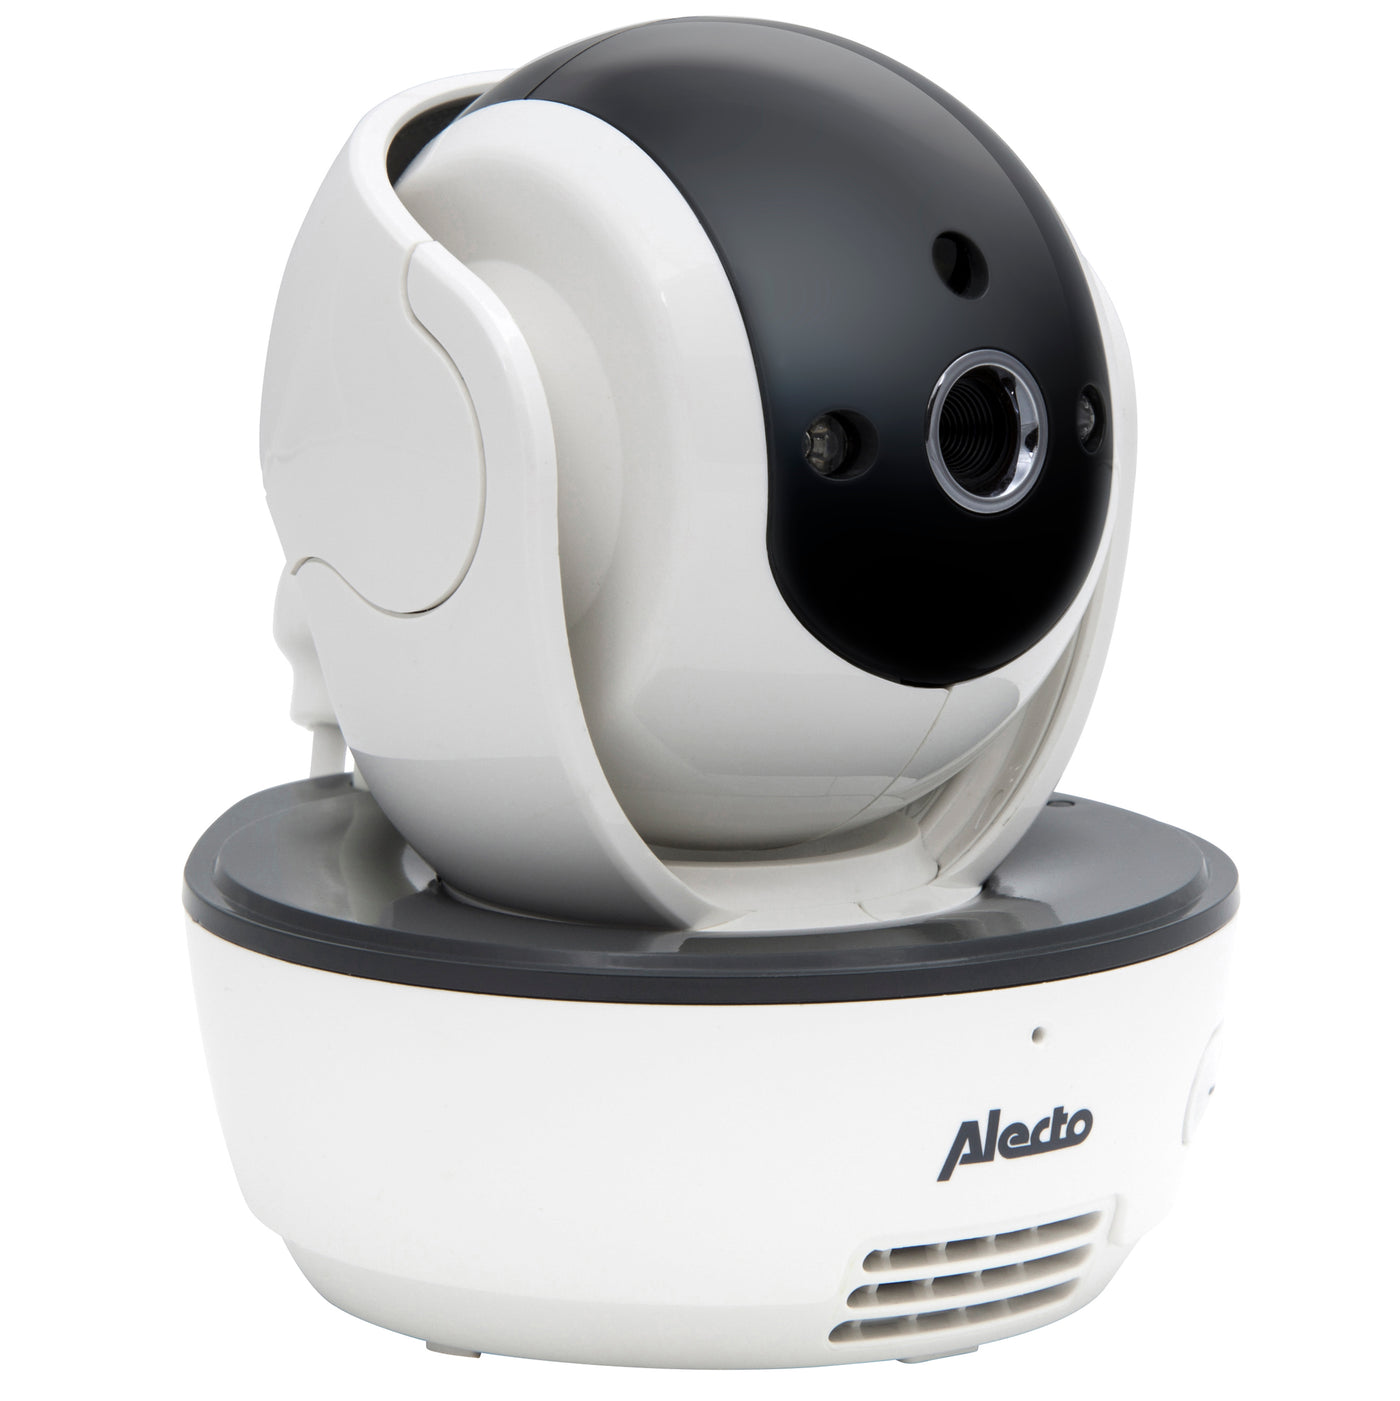 Alecto DVM-201 - Zusätzliche Kamera für DVM-143 / DVM-200 / DVM-207 / DVM-210, Weiß/Anthrazit